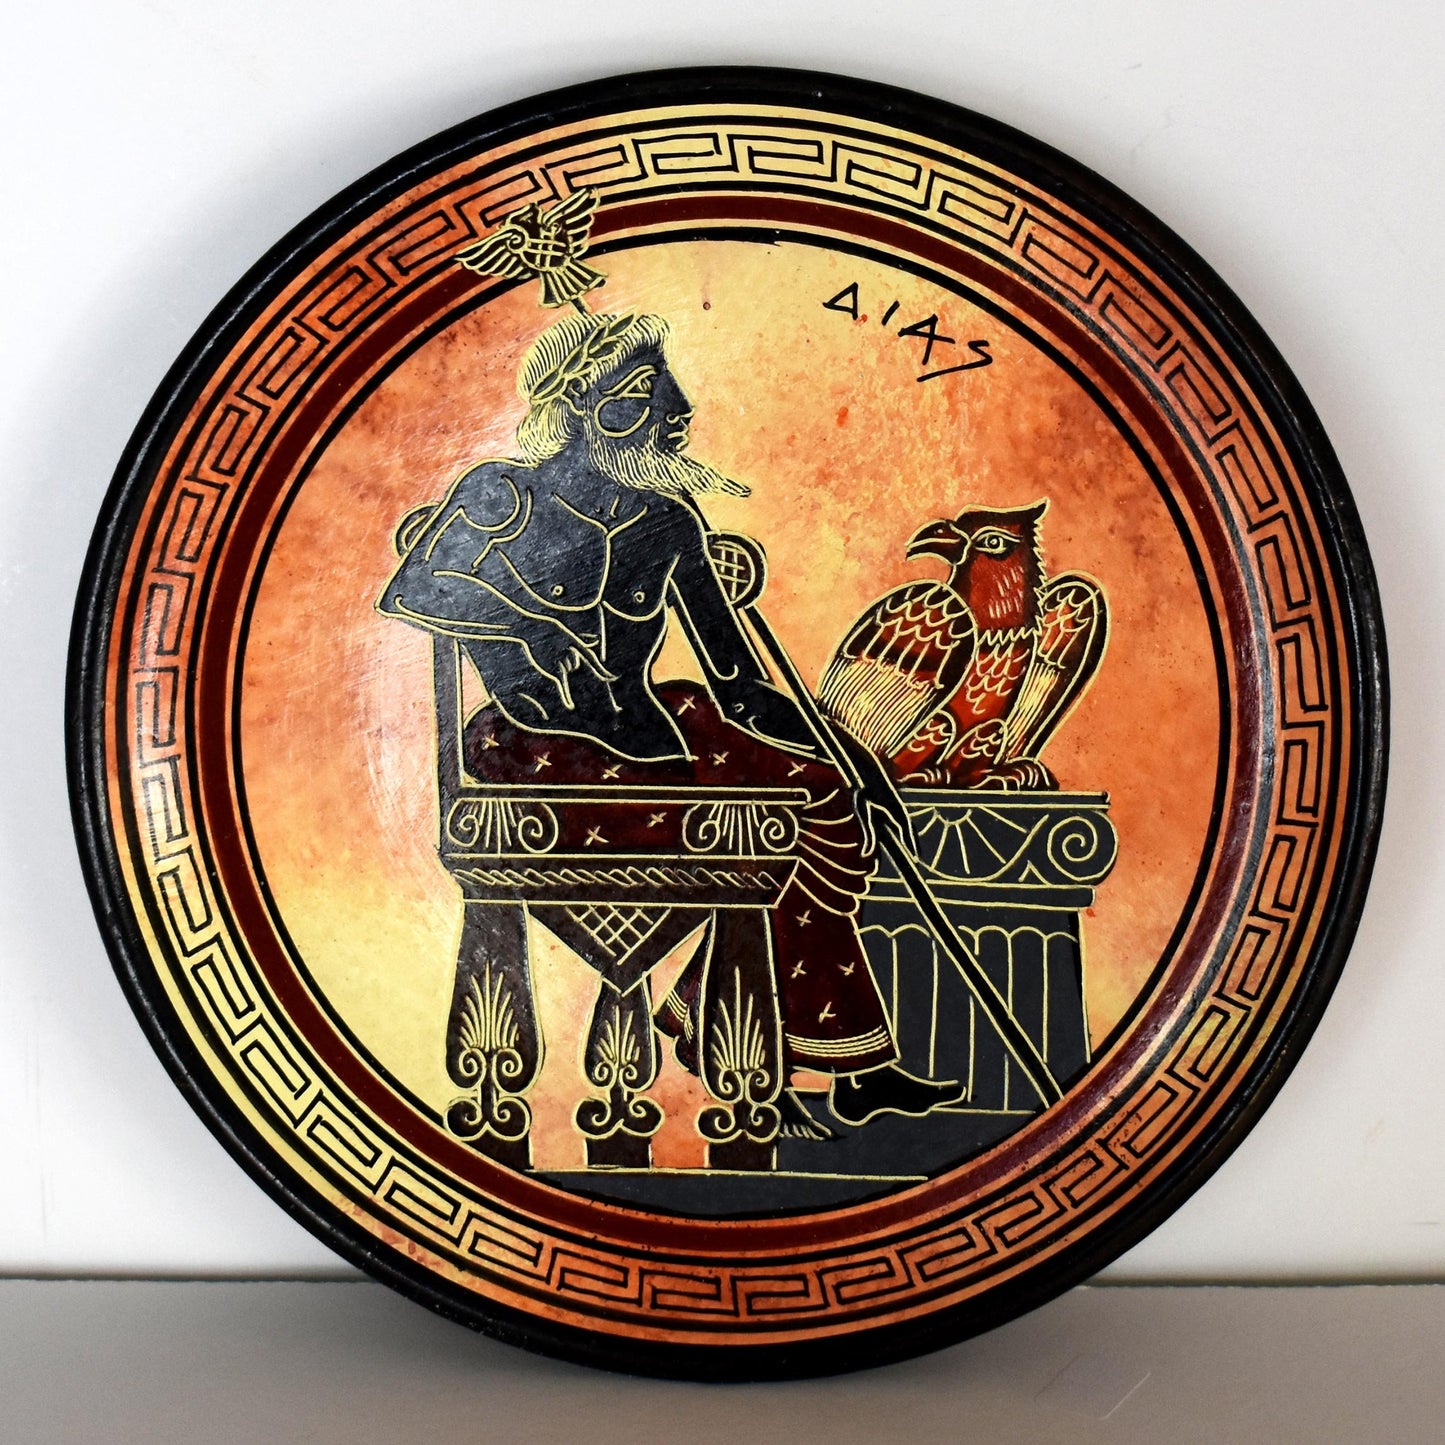 Zeus Jupiter - Greek Roman King of all Gods of Mount Olympus - Ruler of Sky, Lightning and Thunder - Ceramic plate - Handmade in Greece